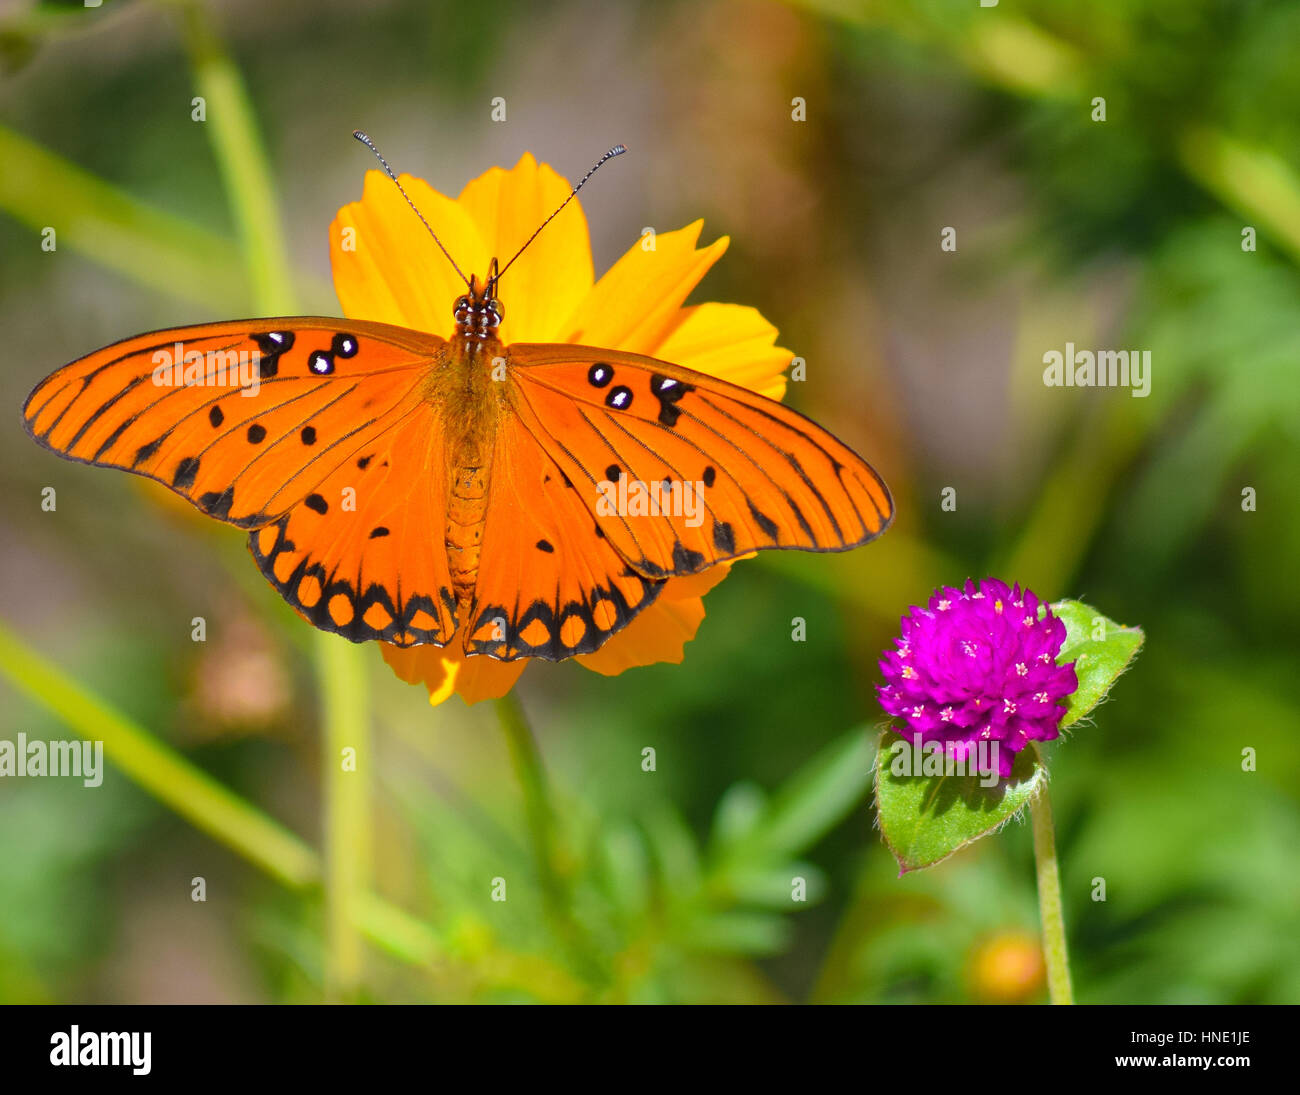 Desiderosi di nettare, questa farfalla si diffonde le sue ali. Foto Stock